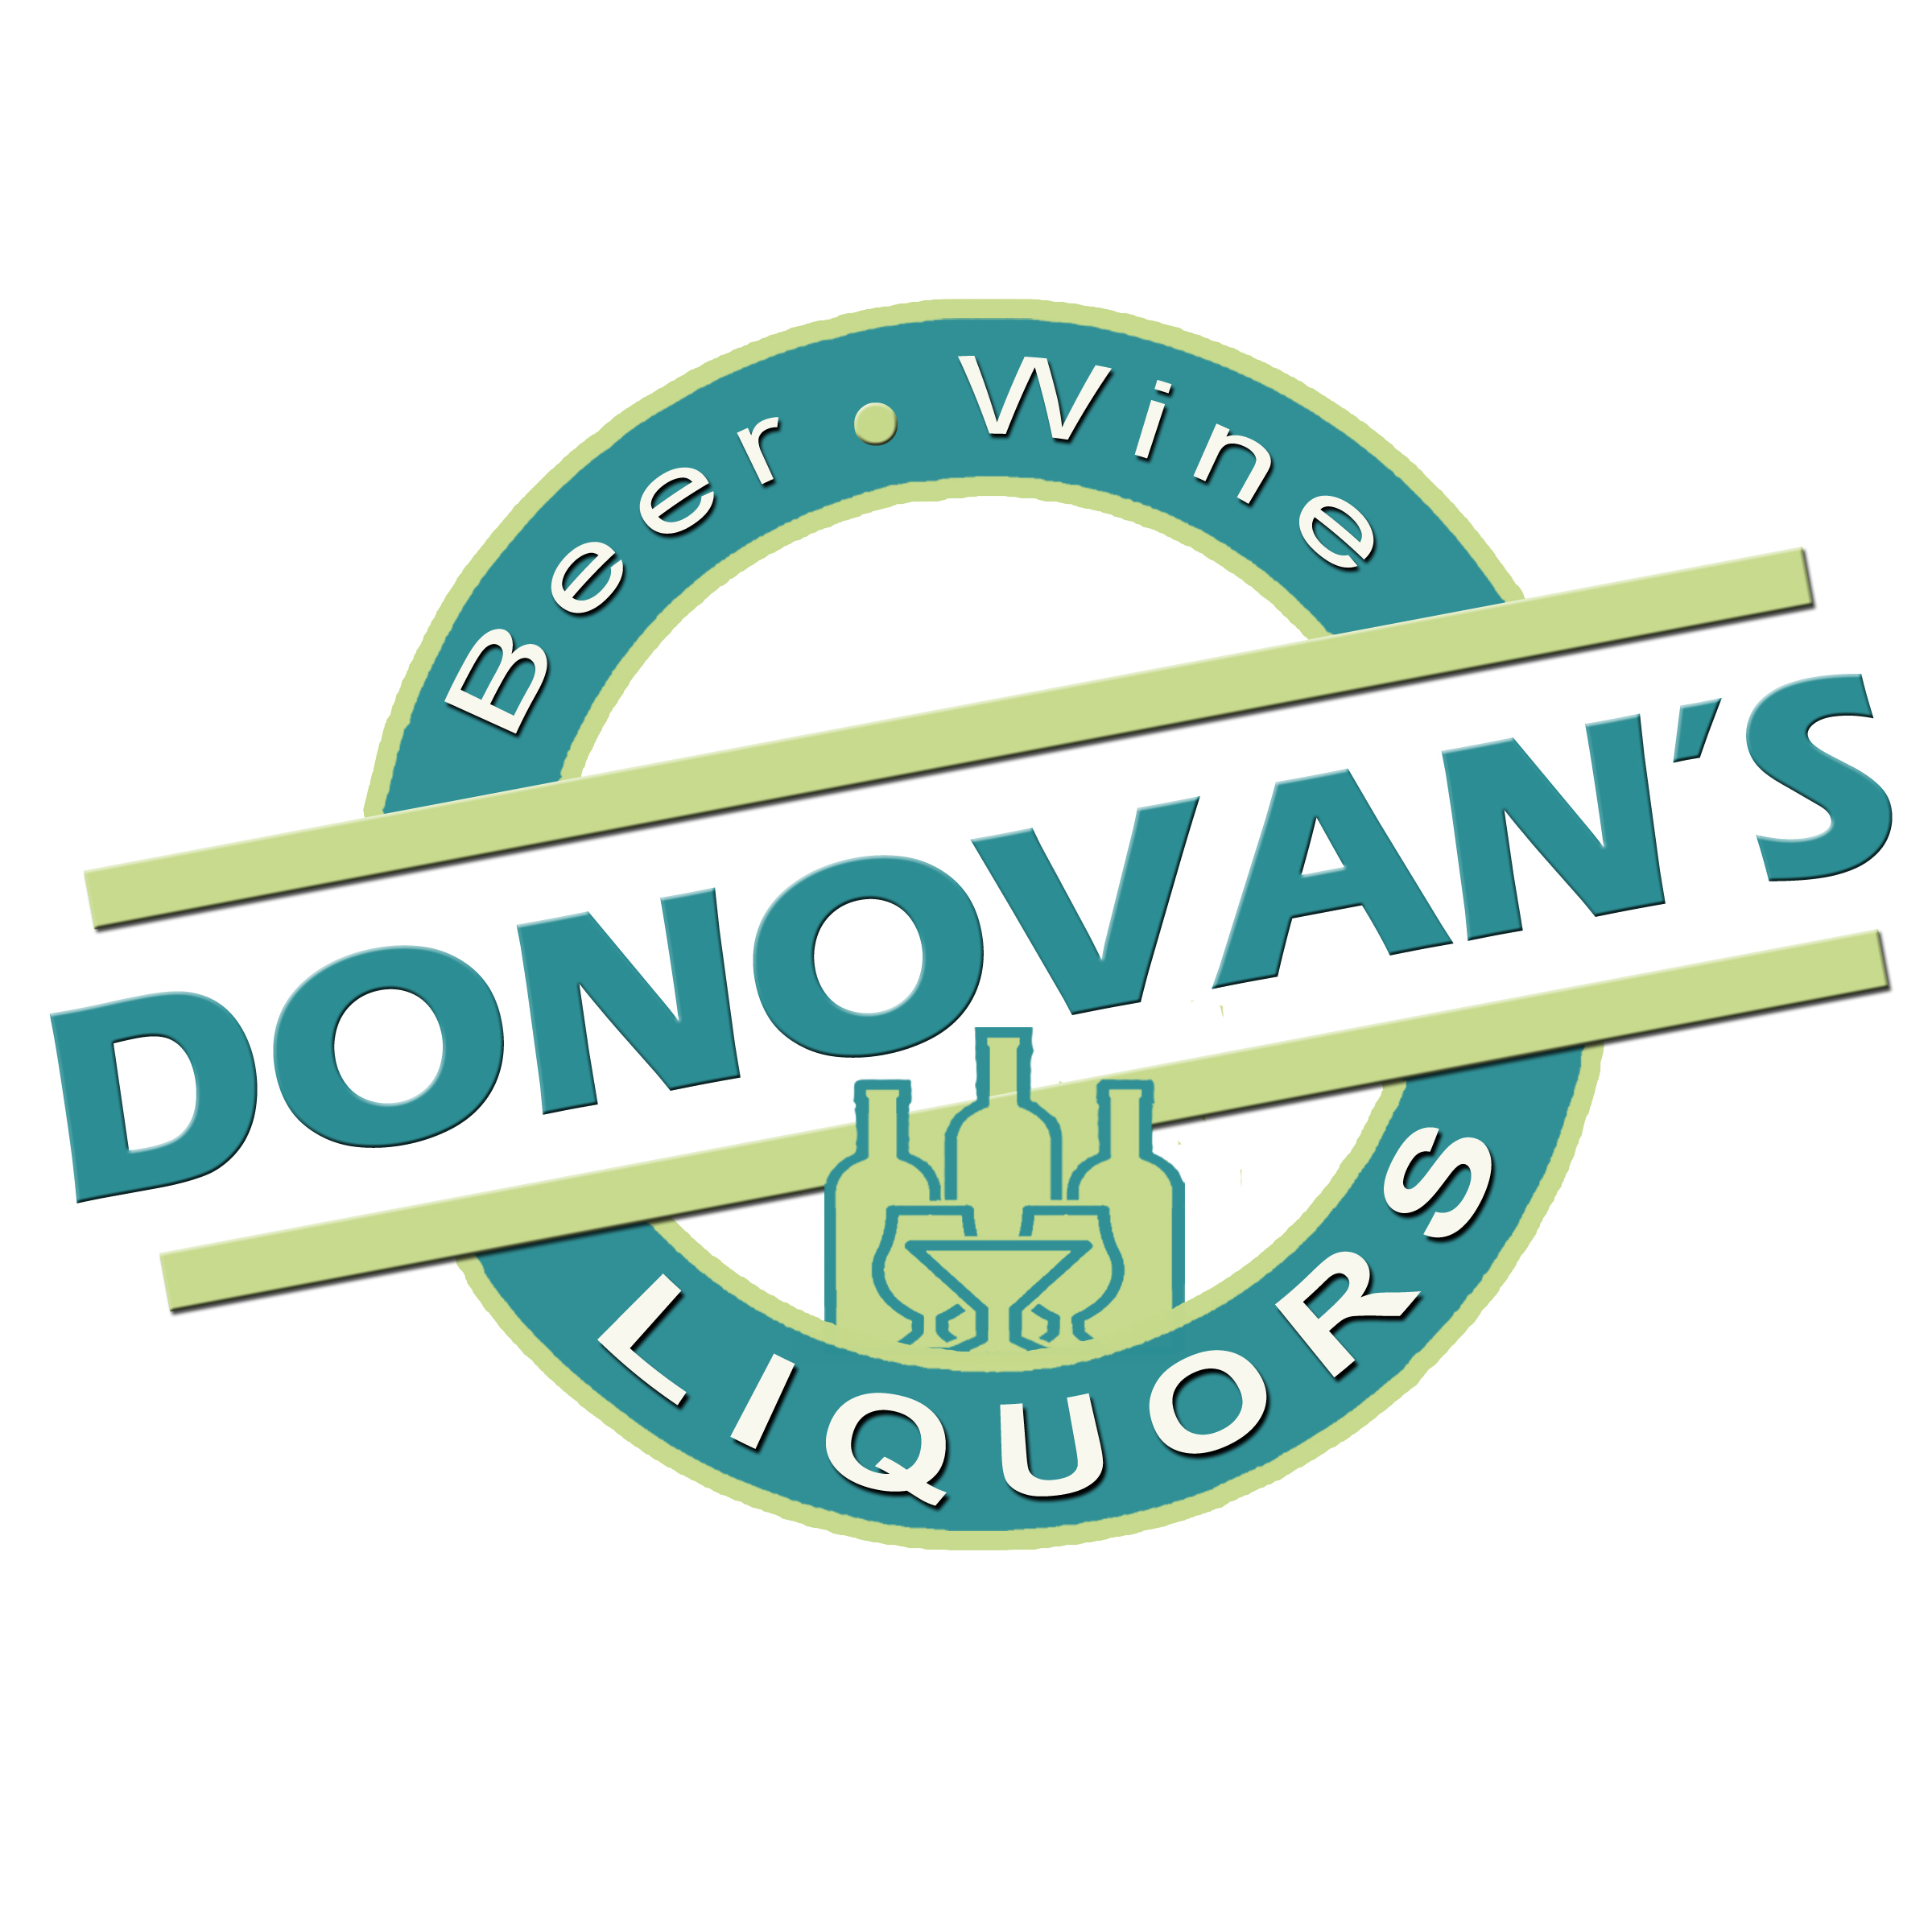 Donovan's liquors. Beach bar near me 32408